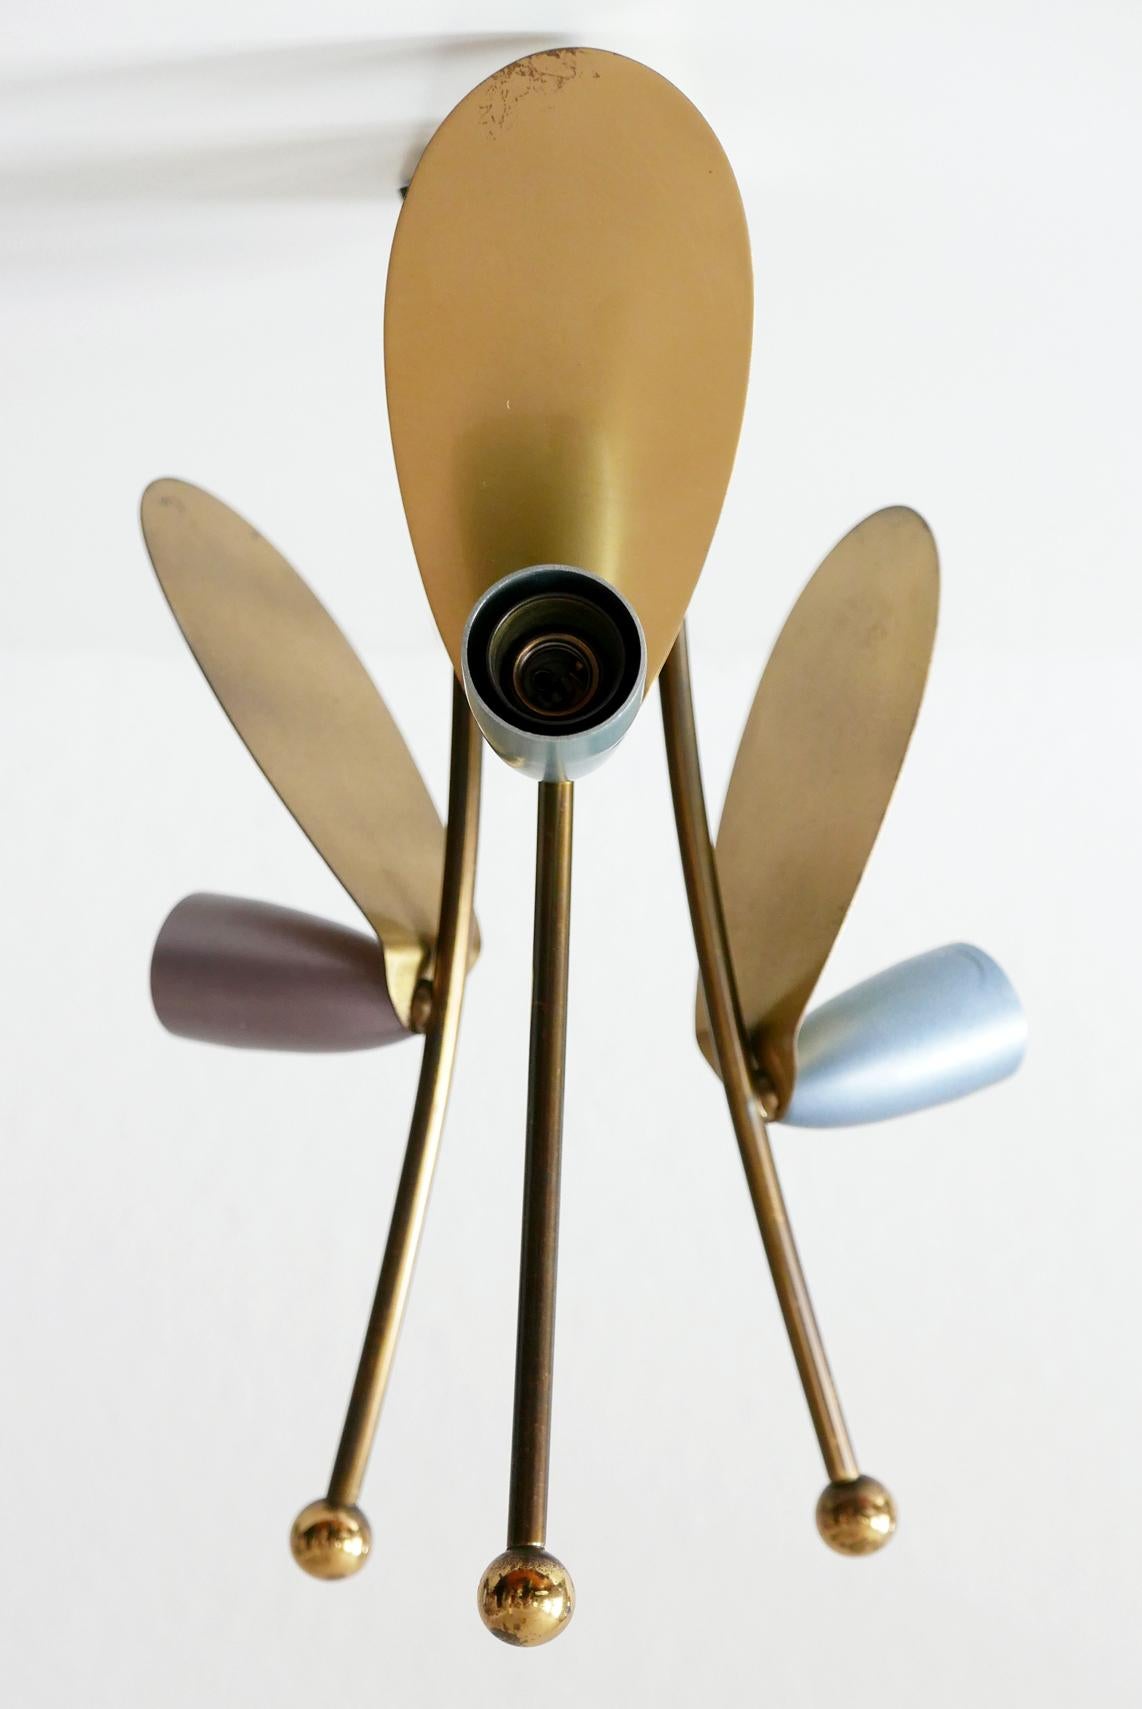 Joli plafonnier Sputnik à trois bras, de style moderne du milieu du siècle. Fabriqué dans les années 1950 en Allemagne.

Réalisée en laiton et en aluminium laqué rouge, vert, bleu et violet, la lampe nécessite 3 ampoules à vis Edison E14, est câblée